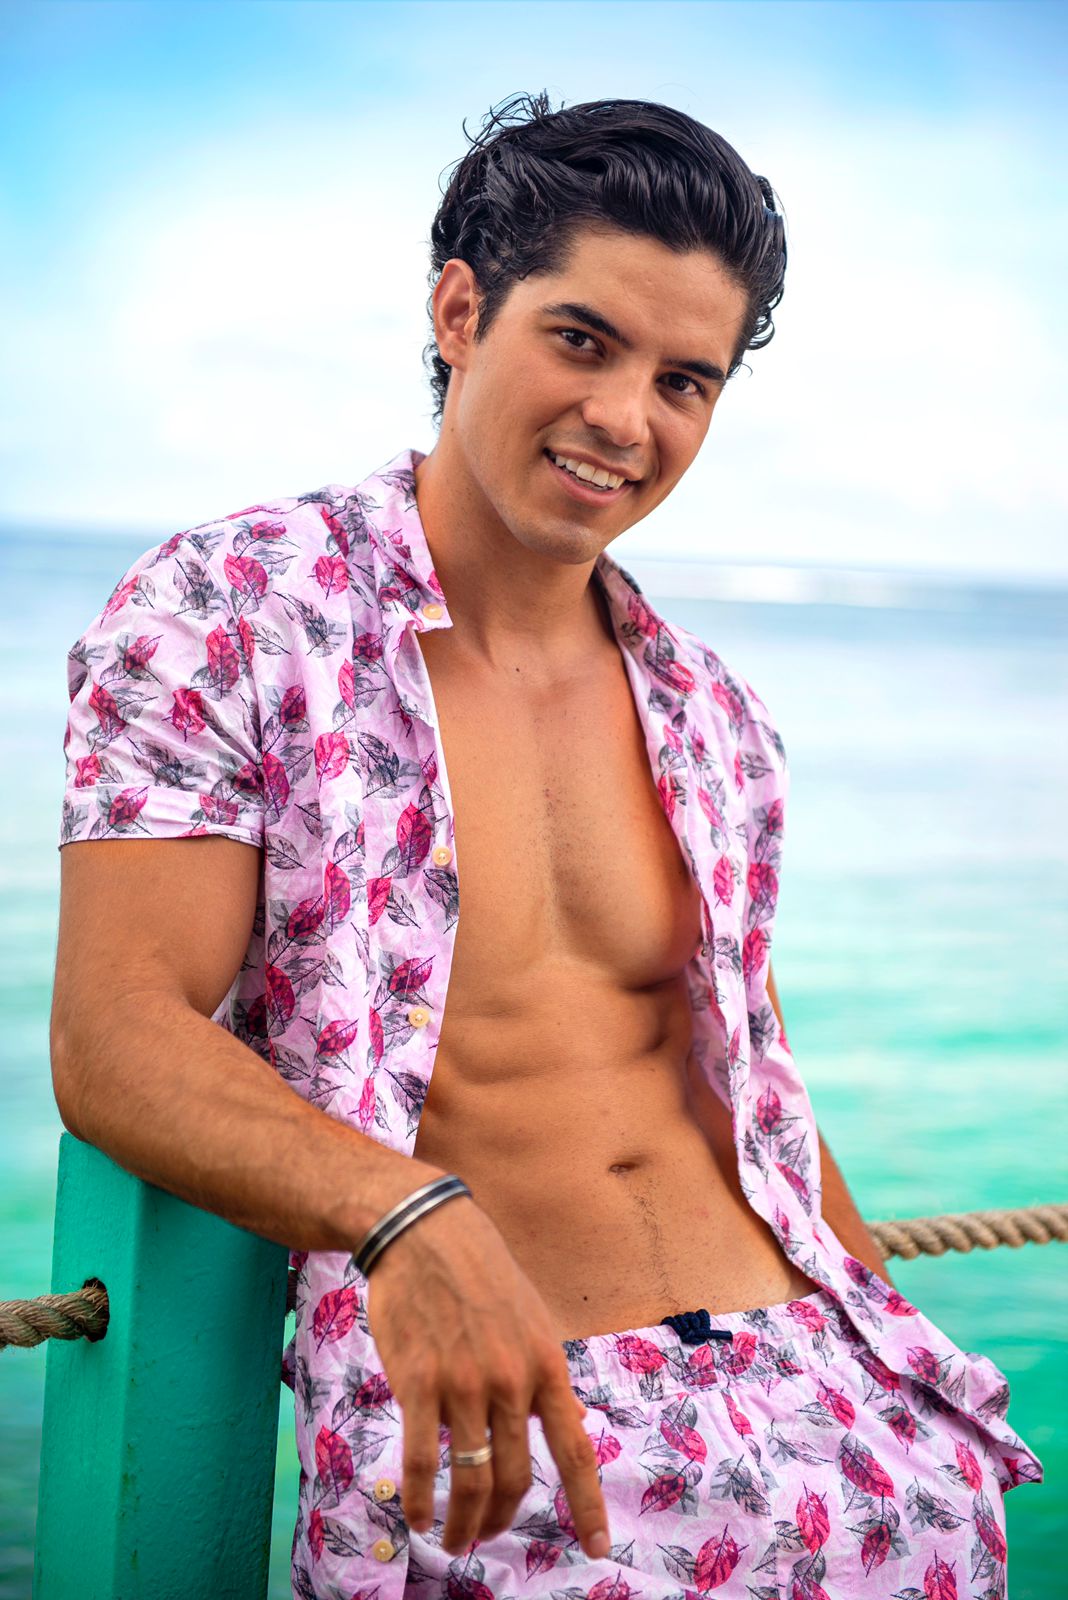 Carlos Pantoja tiene 27 años de edad
Fotos: Cortesía MTV